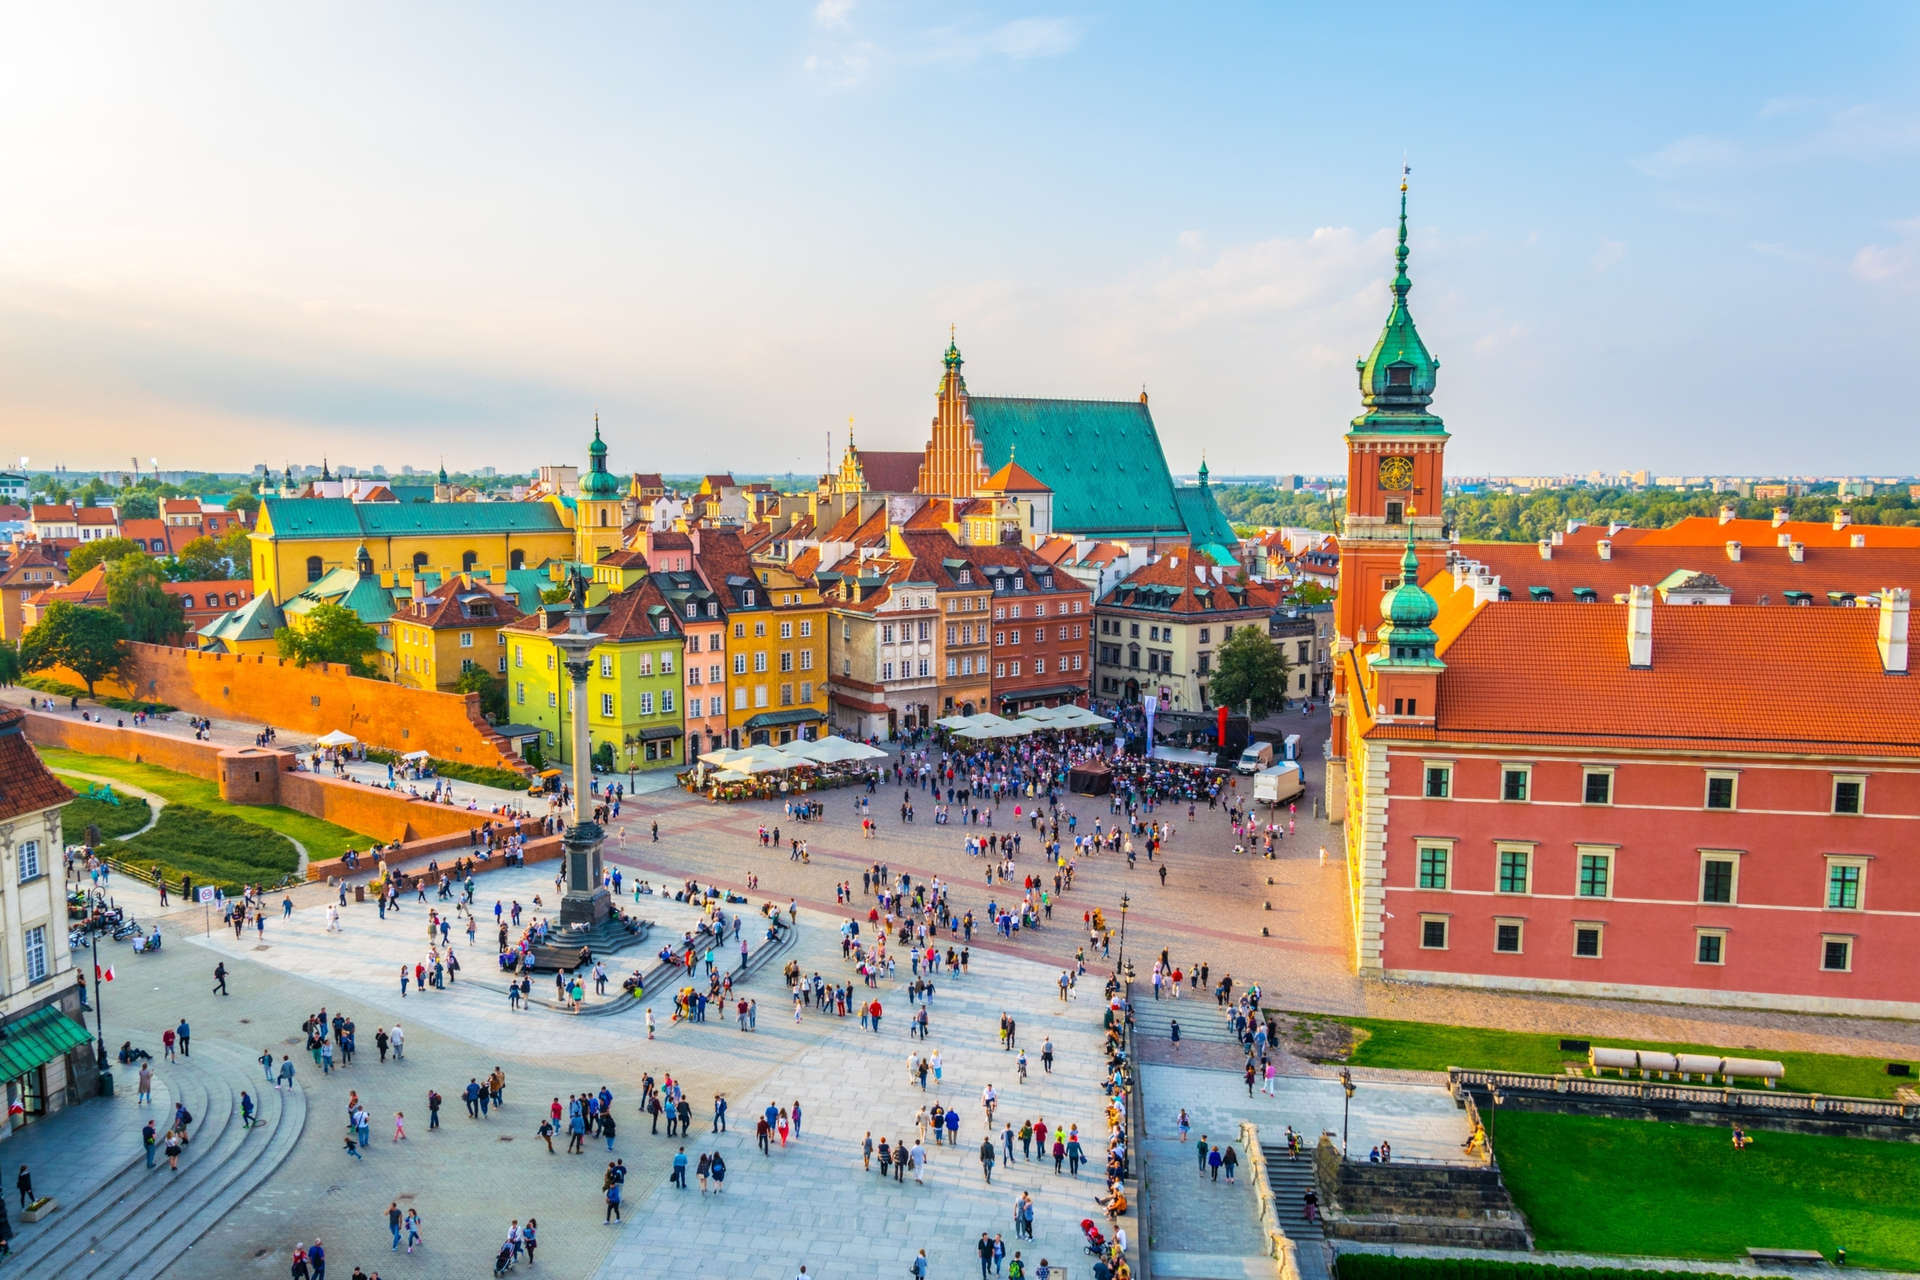 Passeggiate nel centro storico di Varsavia, finemente restaurato, con il suo tripudio di edifici gotici, rinascimentali e barocchi.